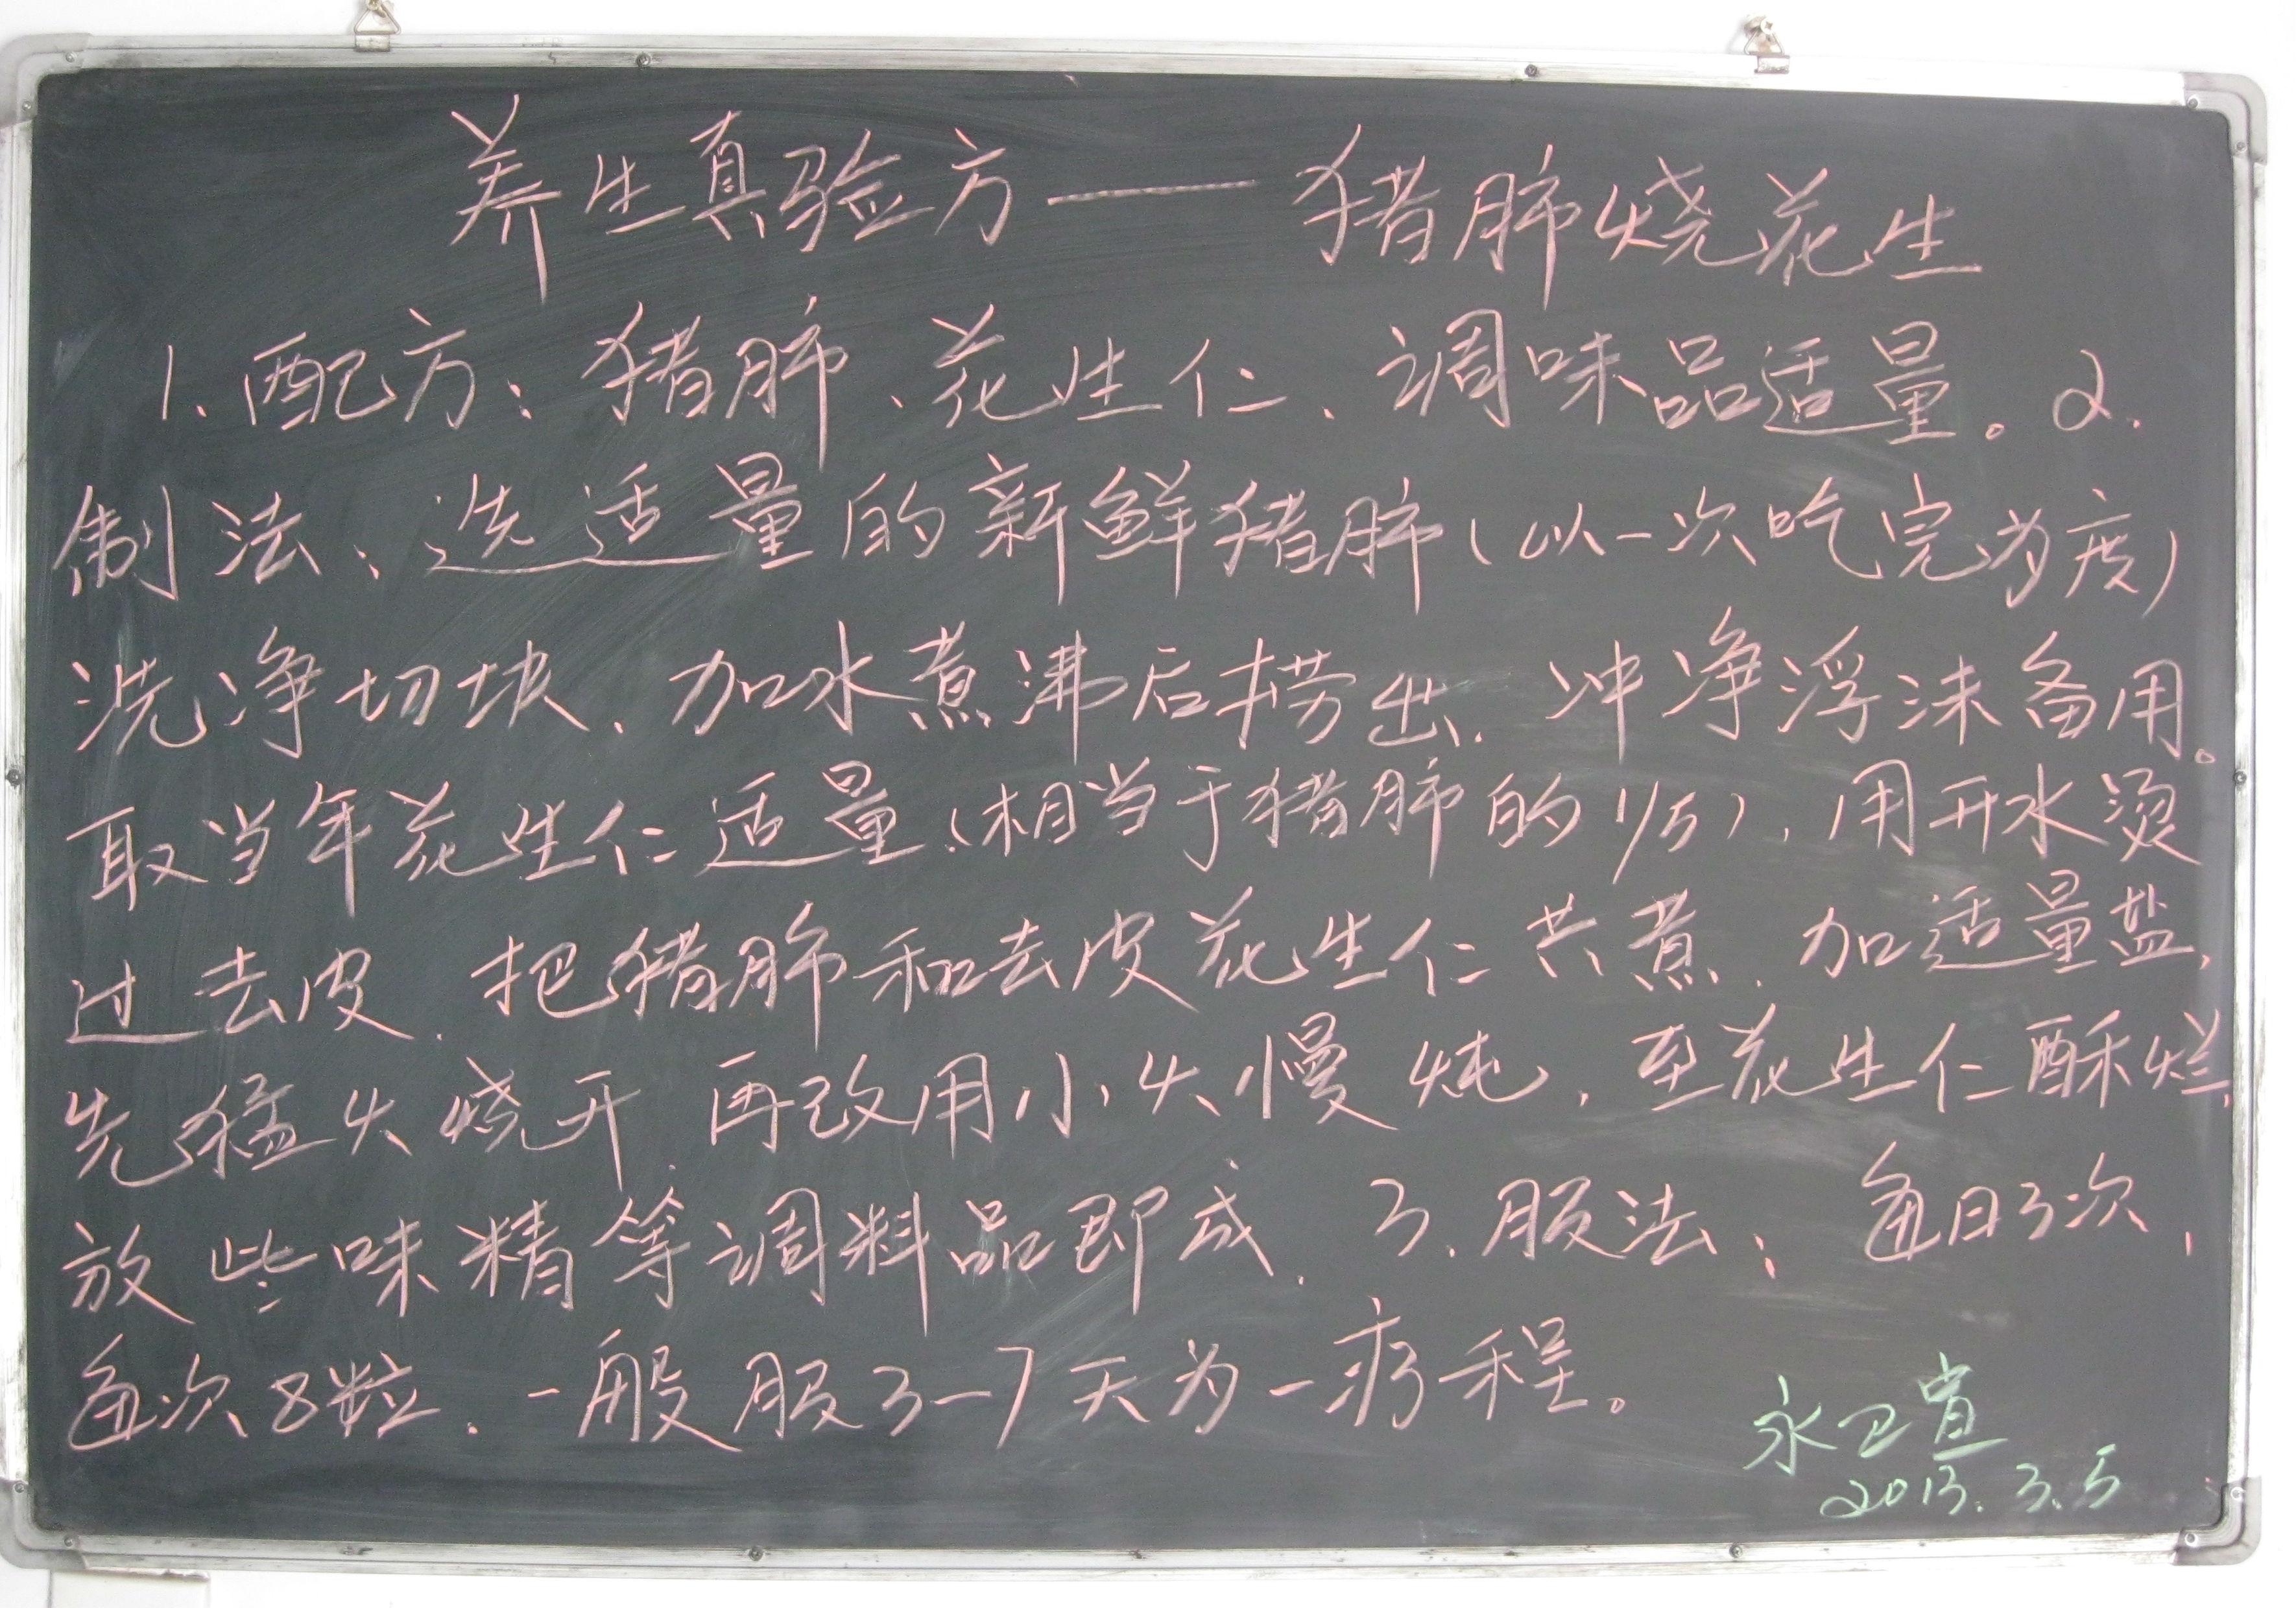 庄浪县永宁乡卫生院2013年第三期黑板报图片